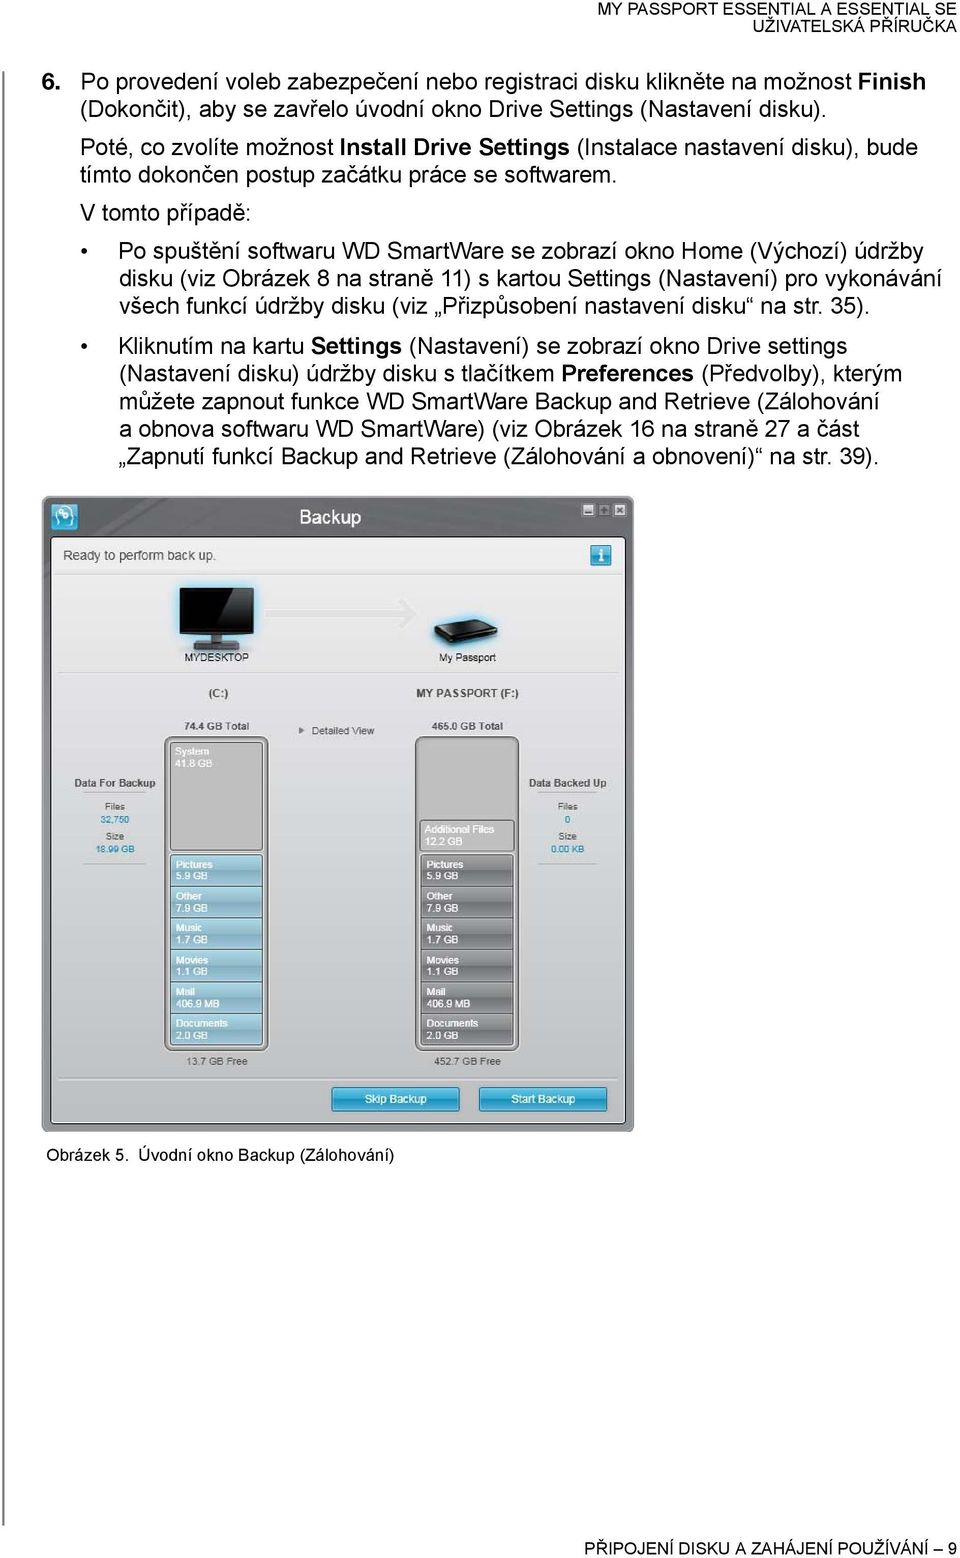 V tomto případě: Po spuštění softwaru WD SmartWare se zobrazí okno Home (Výchozí) údržby disku (viz Obrázek 8 na straně 11) s kartou Settings (Nastavení) pro vykonávání všech funkcí údržby disku (viz